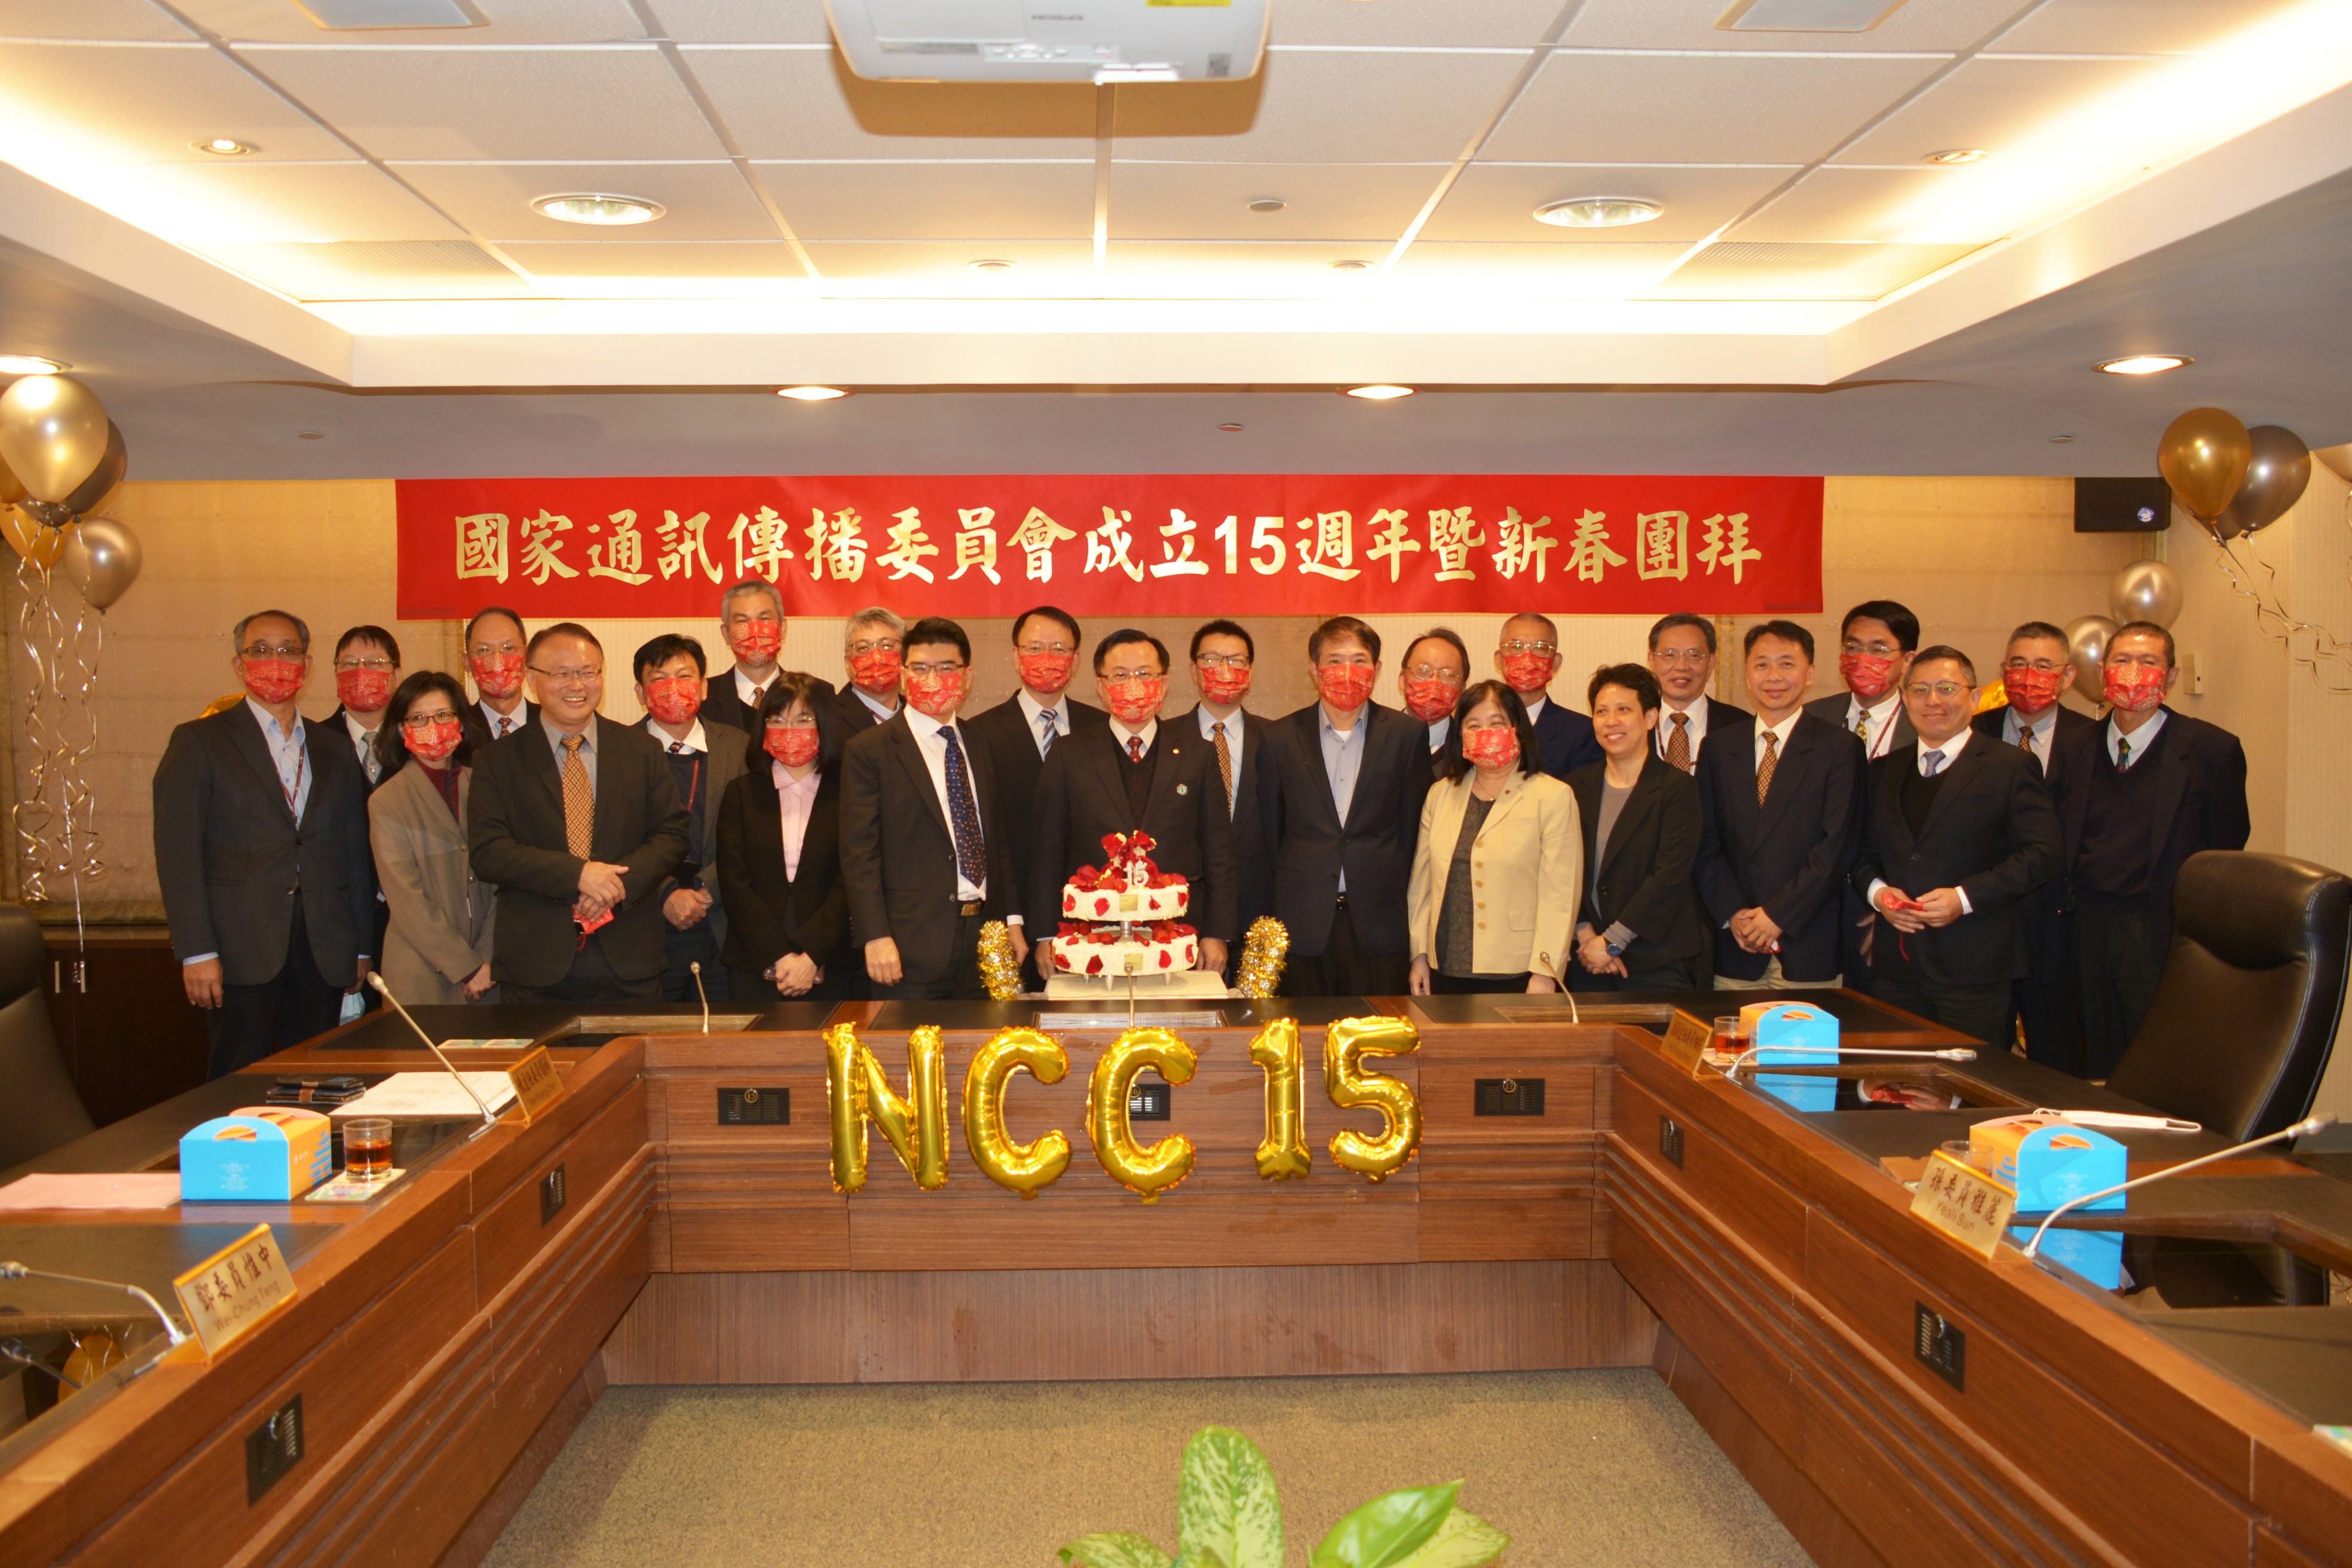 本會主任委員、副主任委員、現任委員及各處室長官代表共同合影，一起慶祝NCC成立15週年。